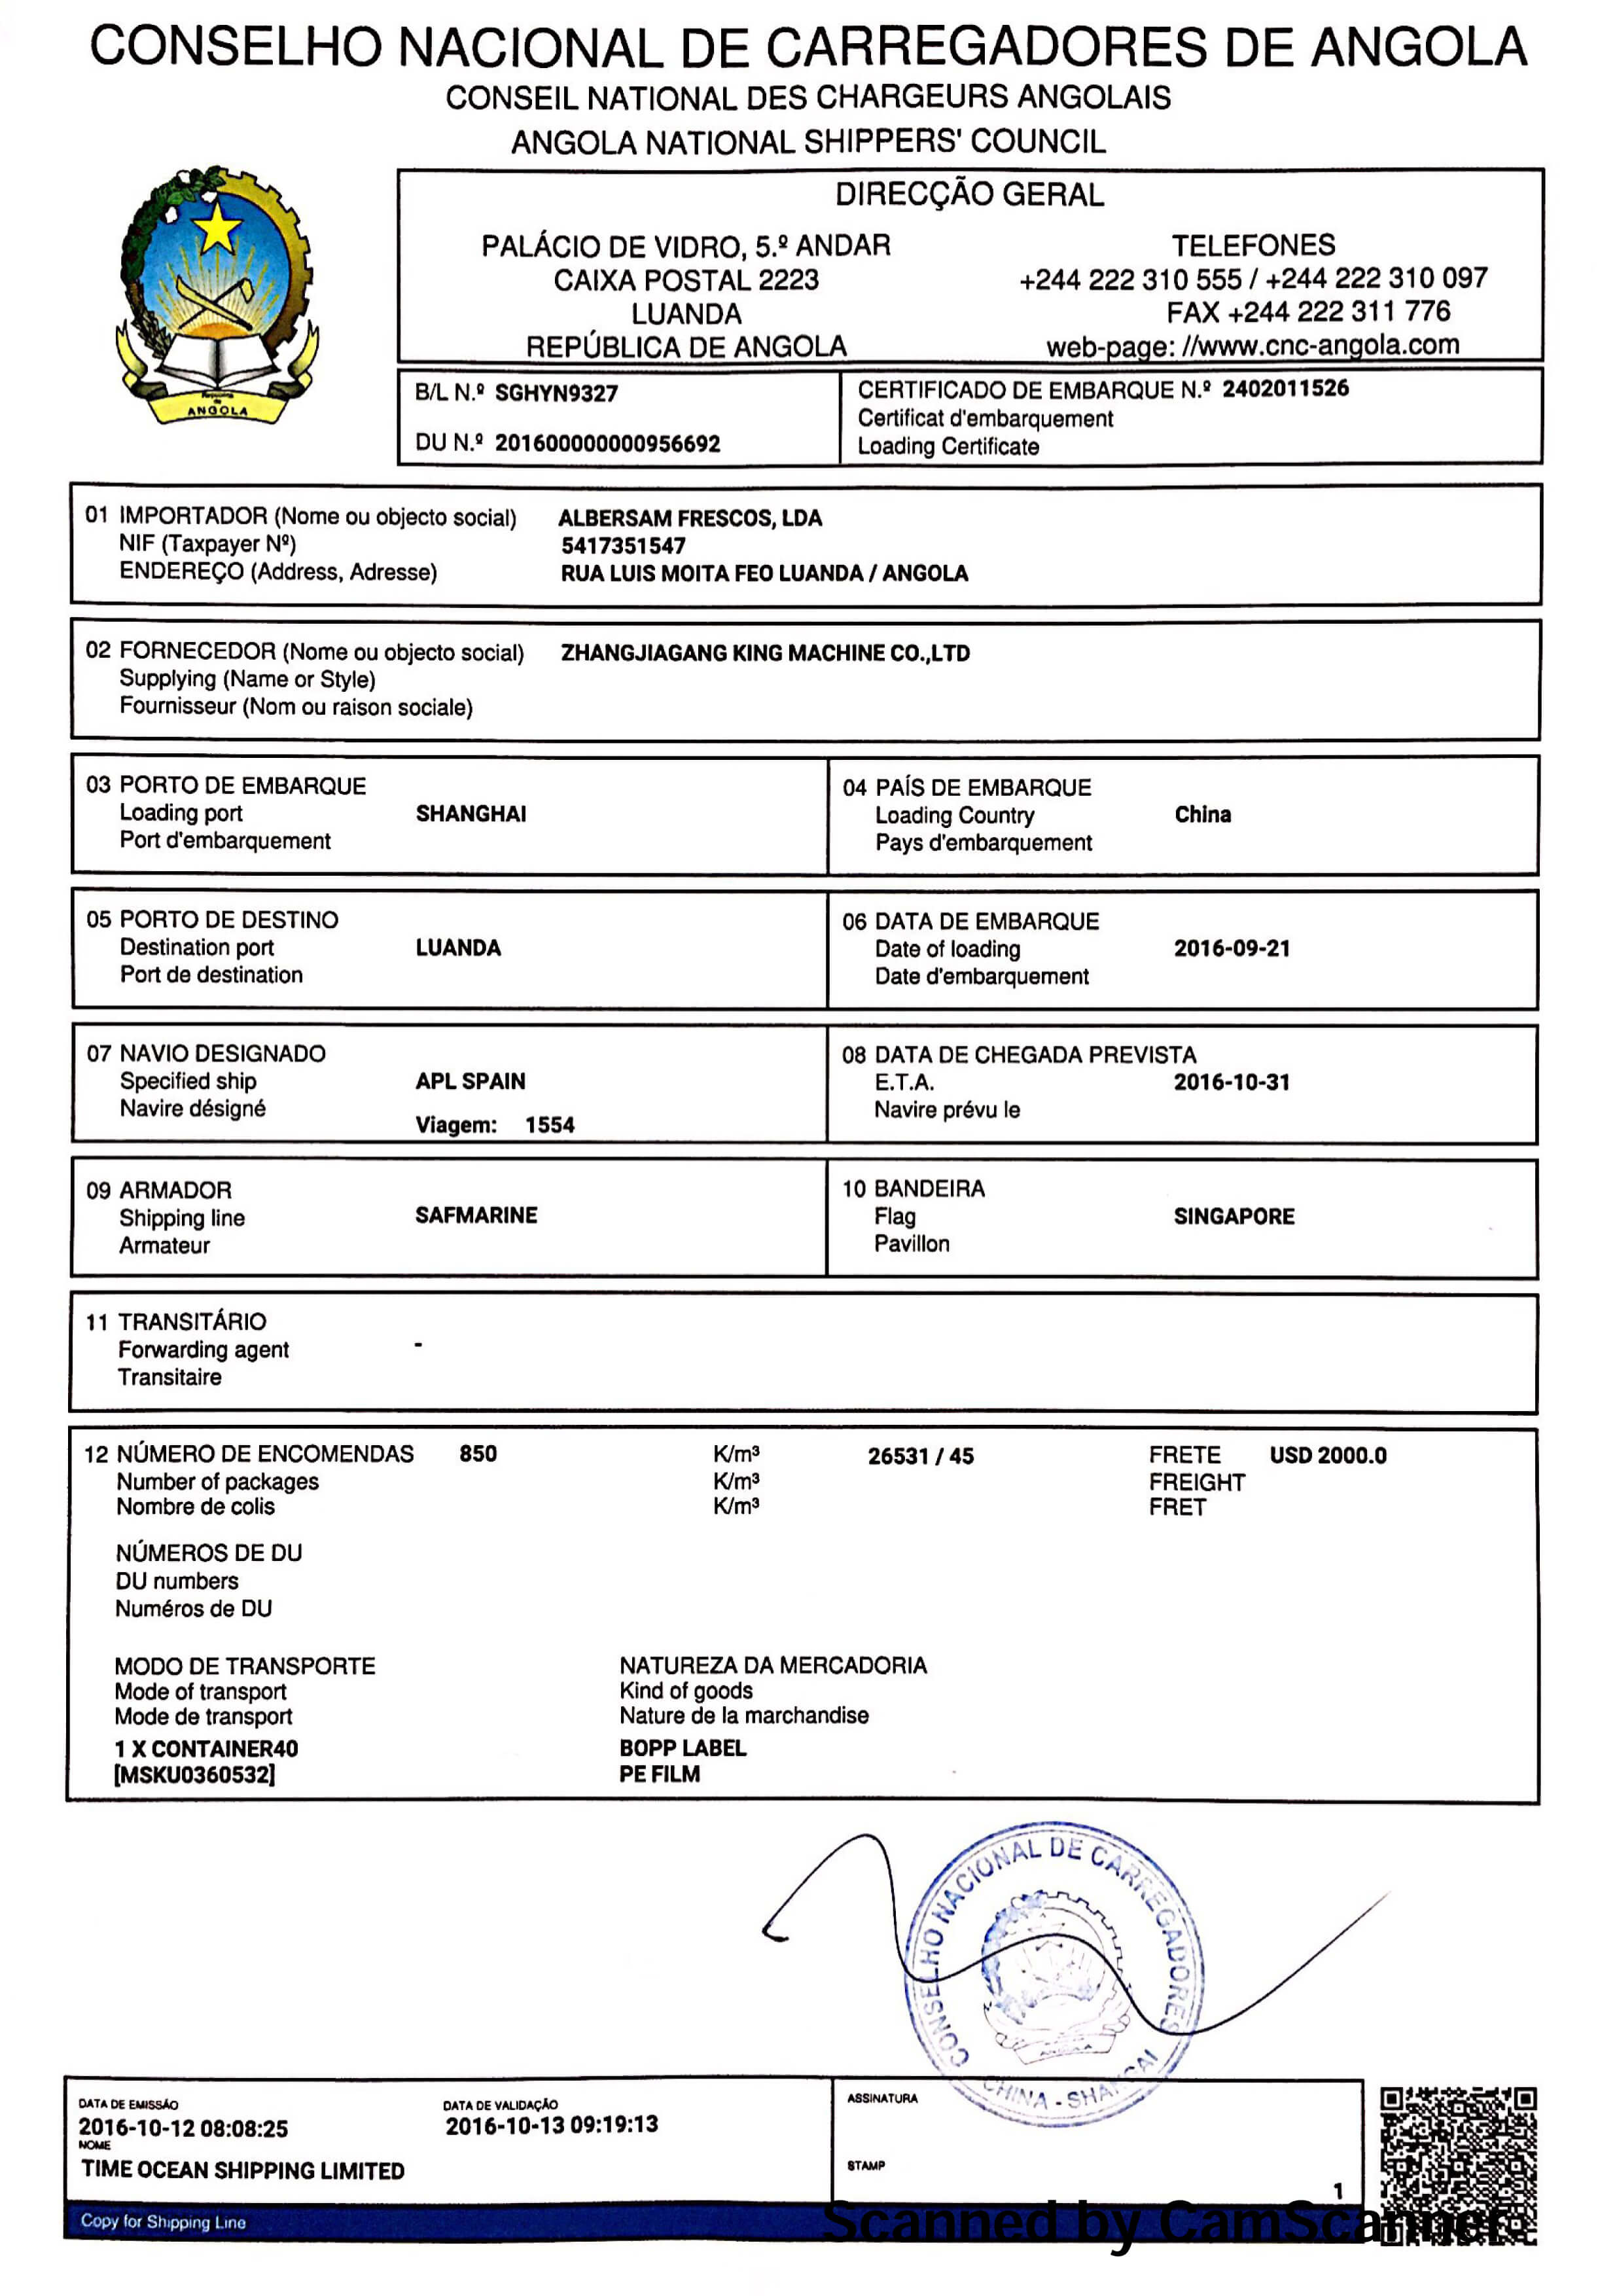 CNCA Certificate